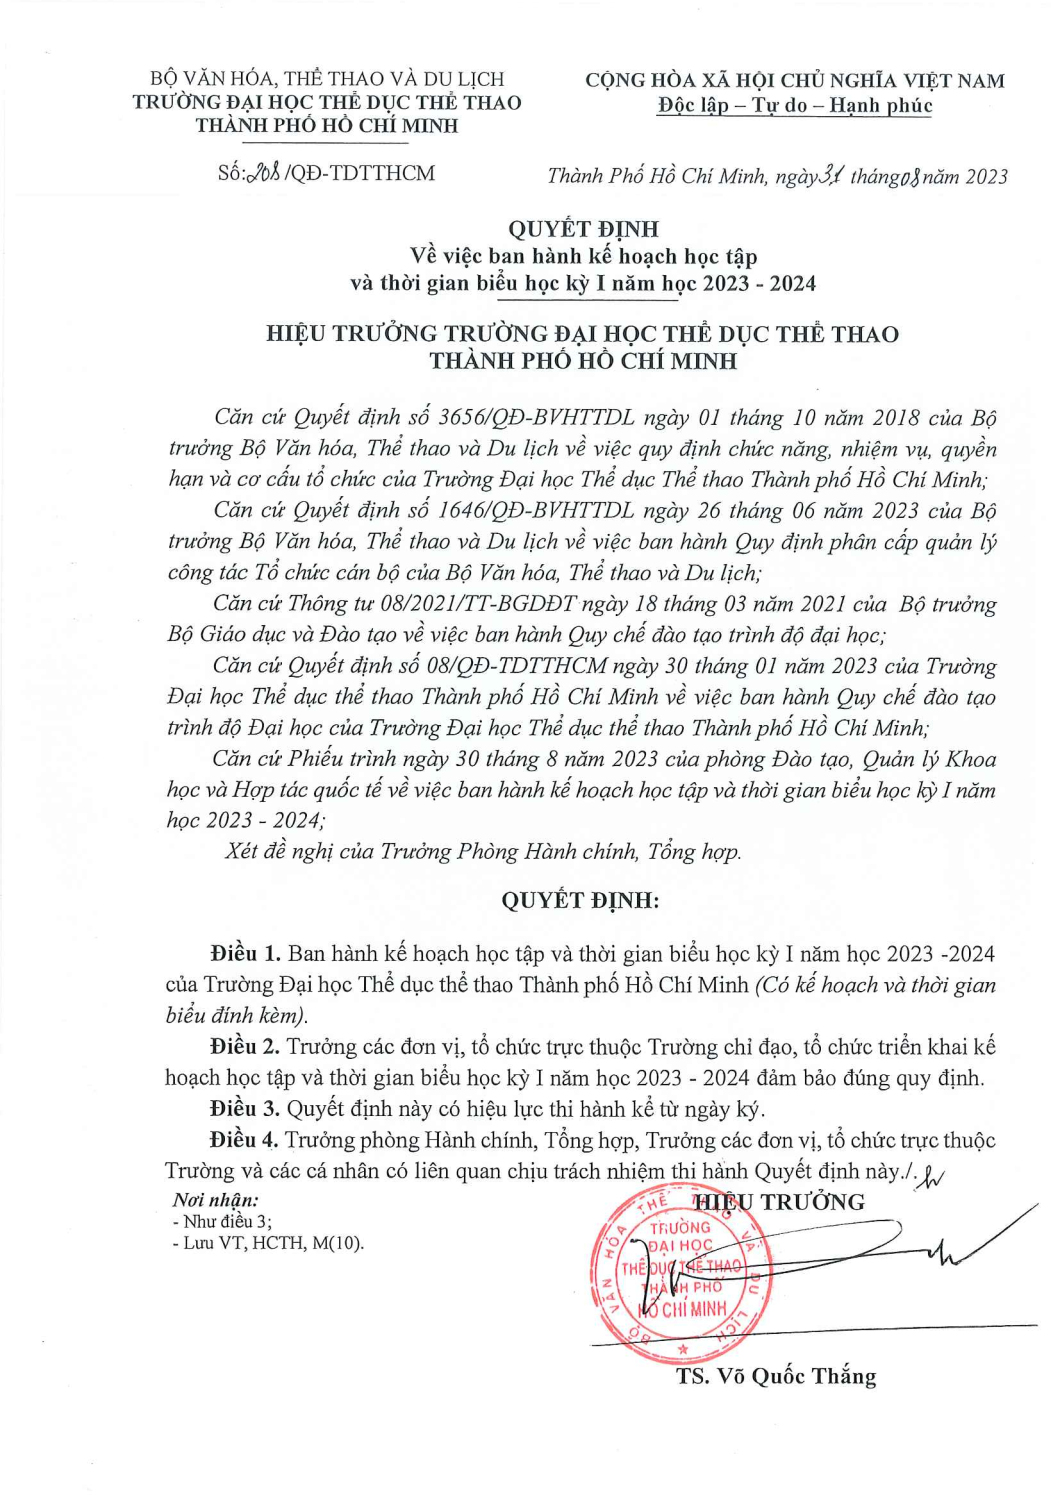 ush quyet dinh ban hanh ke hoach hoc tap va thoi khoa bieu hoc ky 1 dai hoc chinh quy nam hoc 2023 2024 page 1